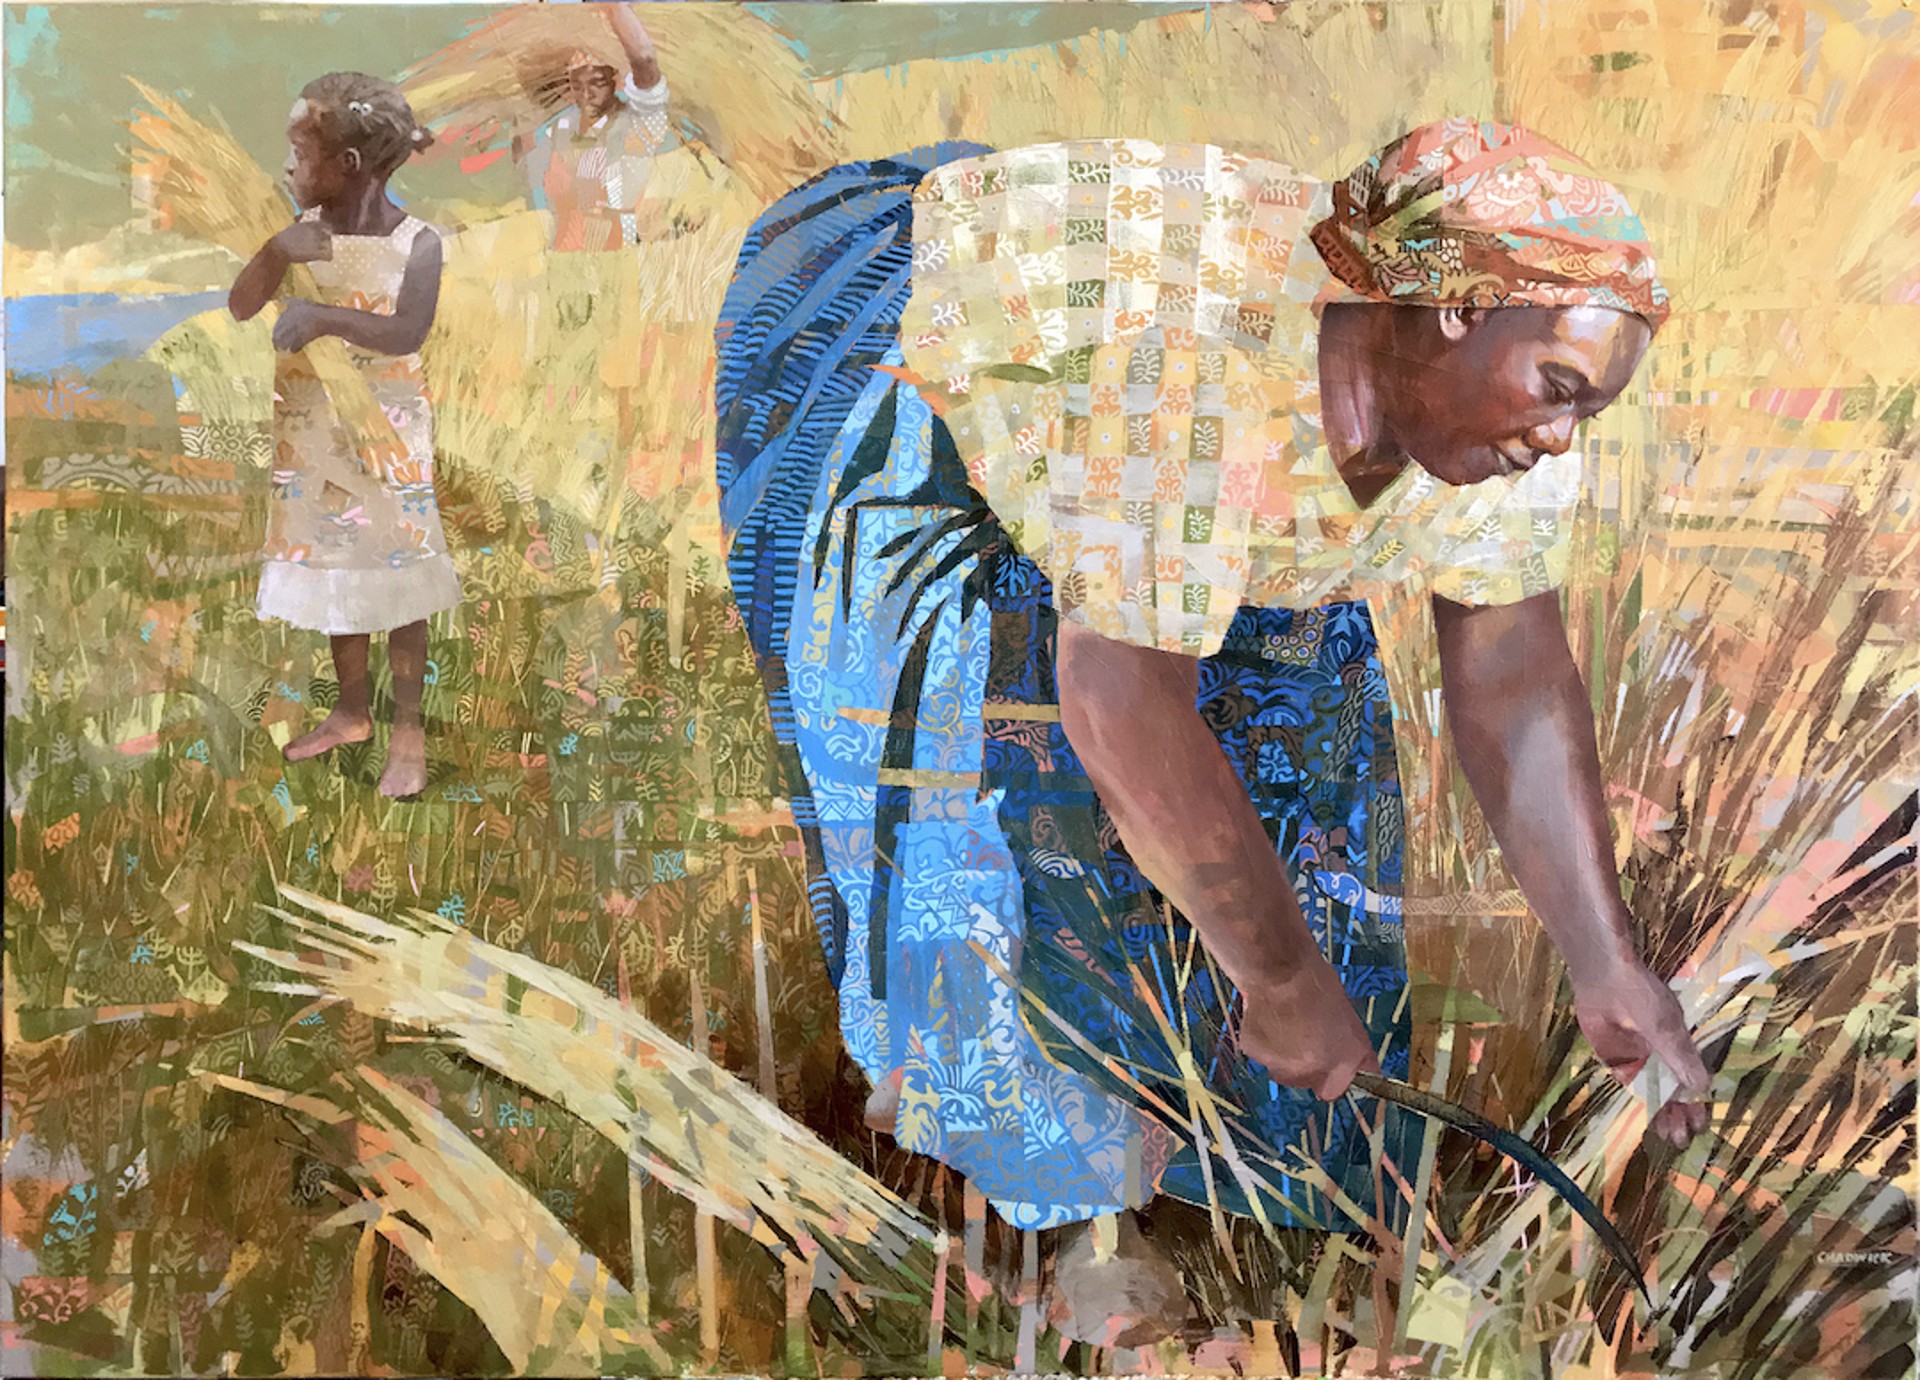 Wheat Gatherers by Kevin Chadwick